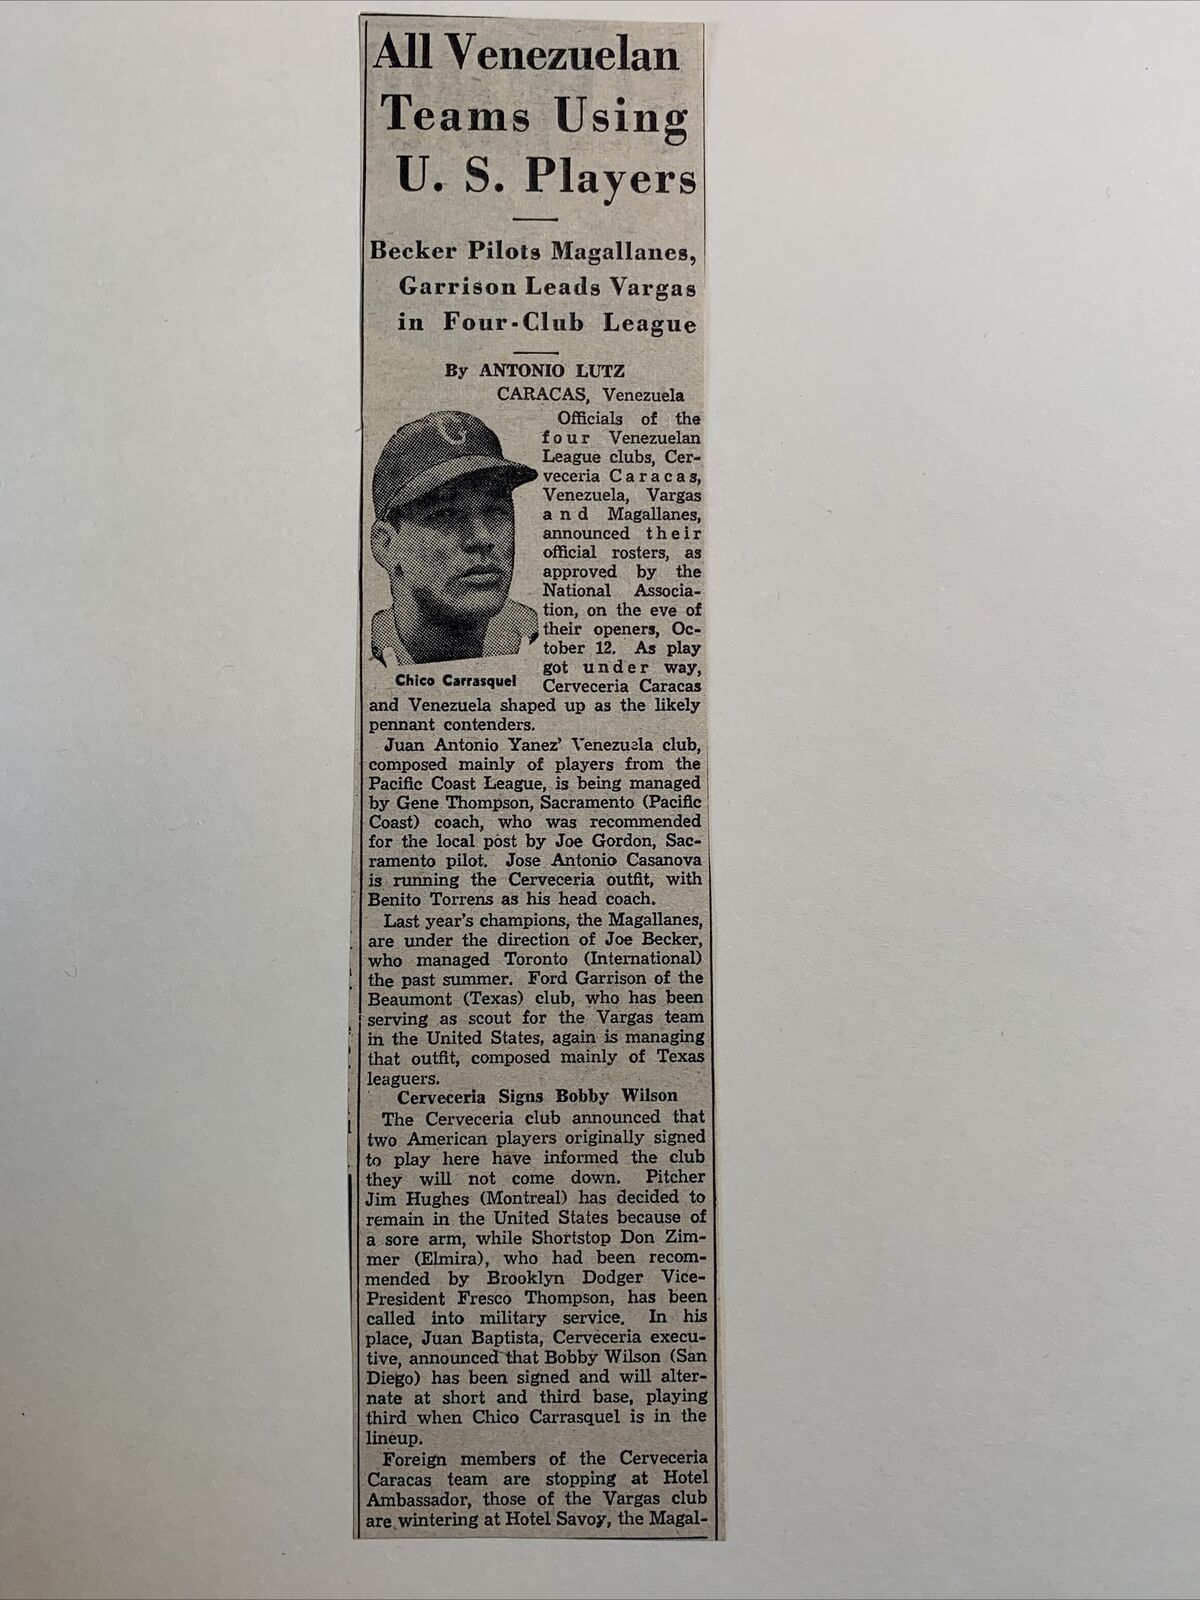 Chico Carrasquel Venezuela Cerveceria 1951 Sporting News Baseball 2X9 Panel